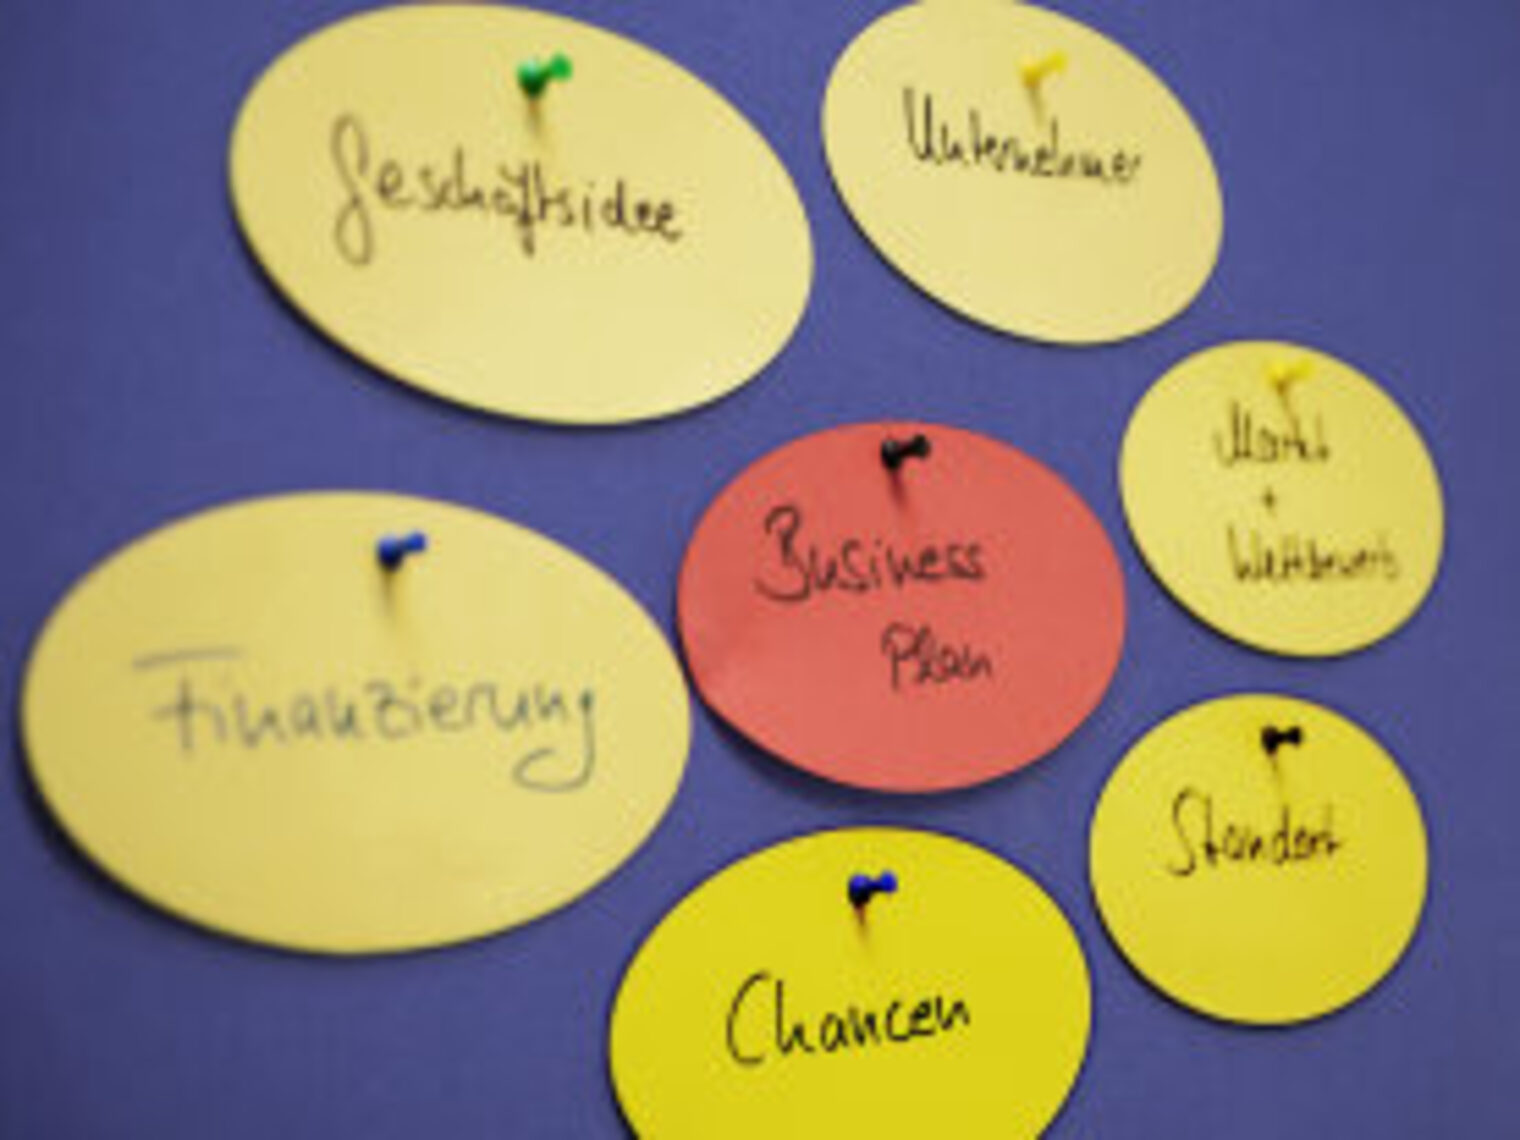 An einer Pinnwand hängen Notizzettel im Kreis, in der Mitte steht der Begriff Businessplan, drumherum Punkte wie Geschäftsidee, Finanzierung und Chancen.